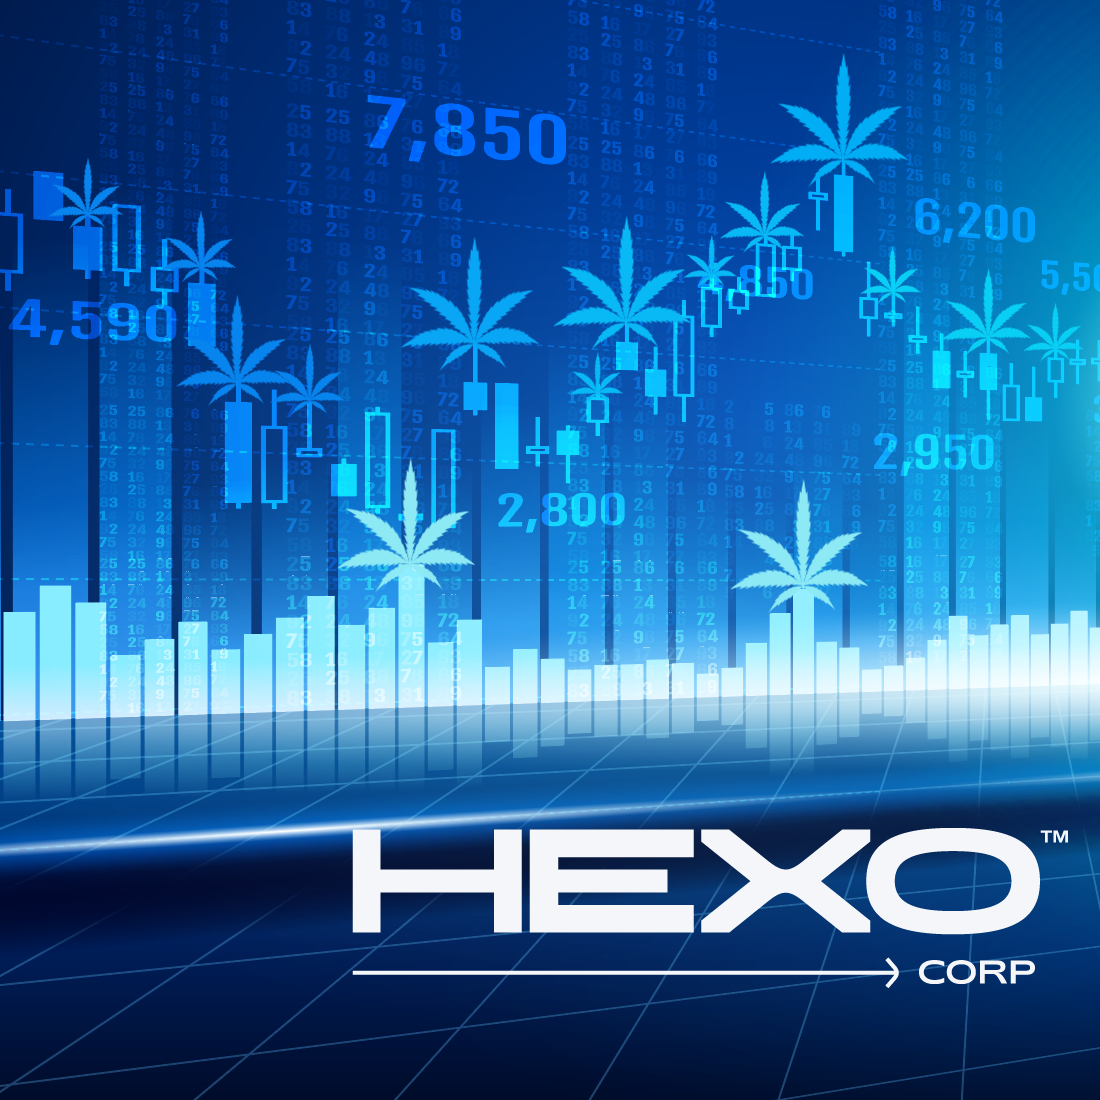 Hexo Corp Official Website